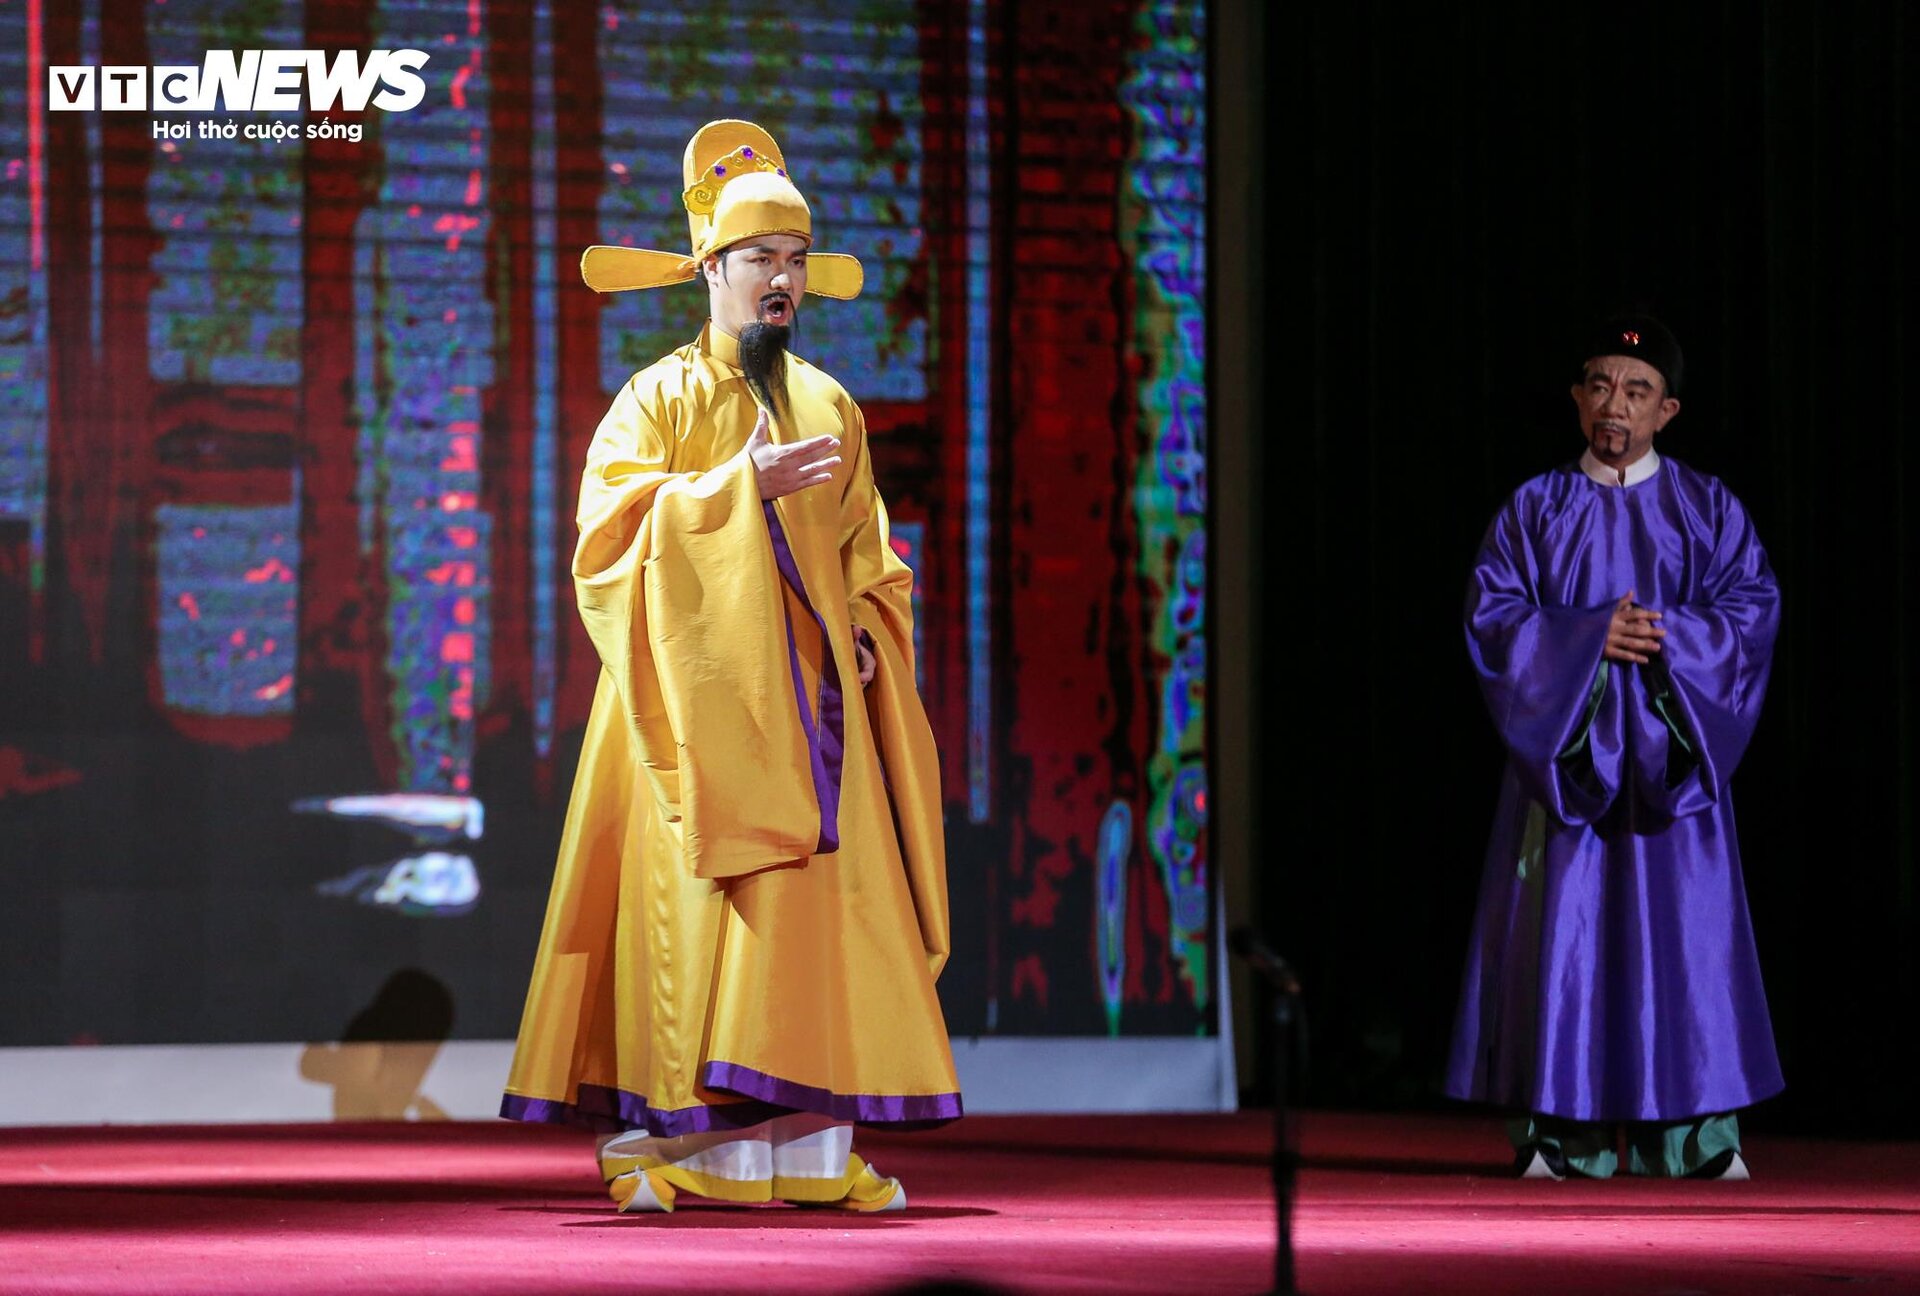 Biểu diễn vở opera kỷ niệm 50 năm quan hệ ngoại giao Việt Nam - Nhật Bản - 14